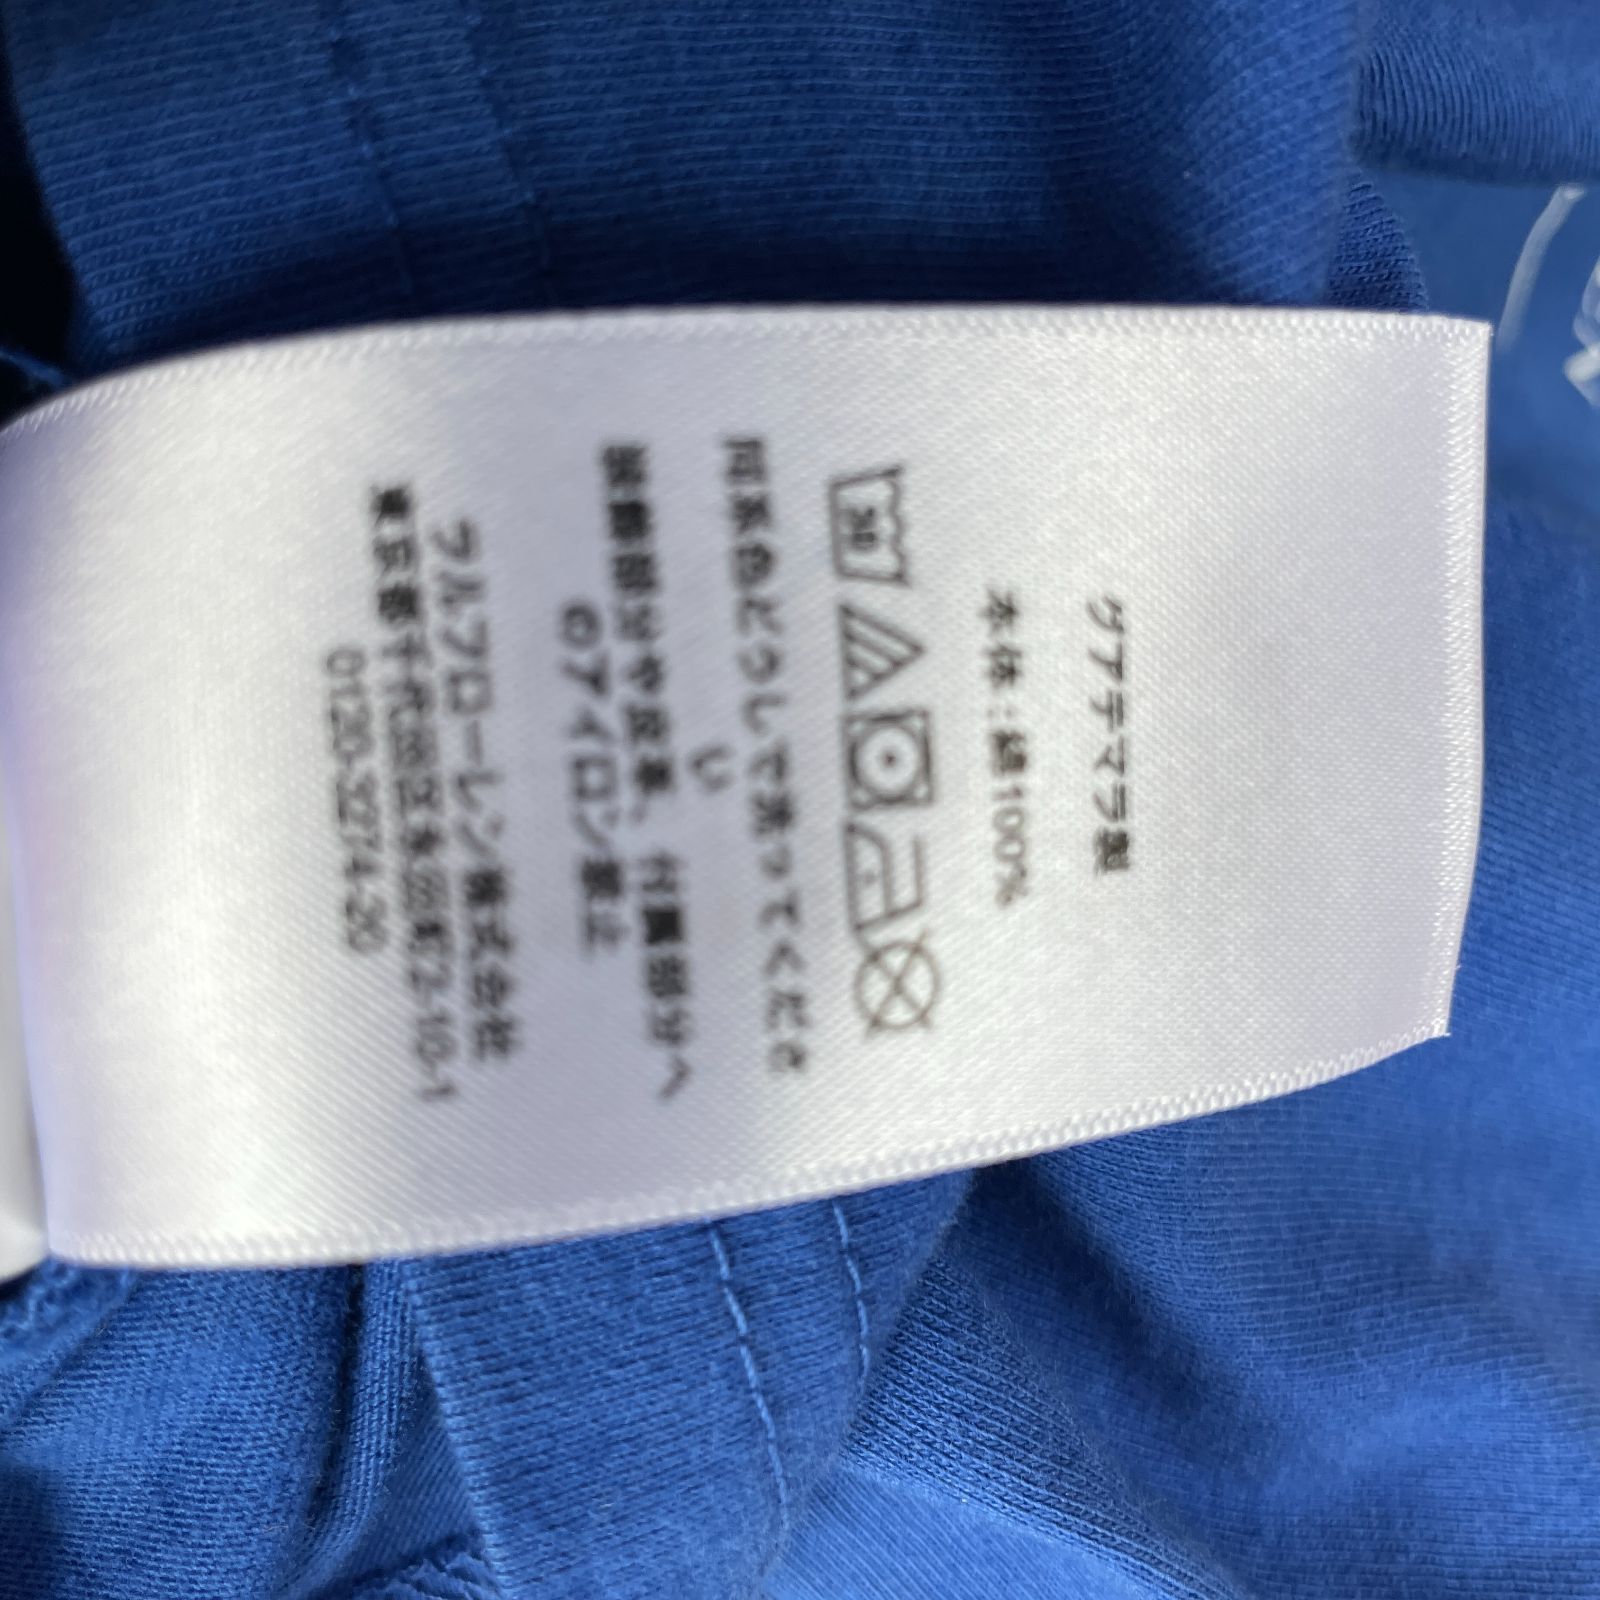 RalphLauren【新品】ラルフローレン ポロベア Tシャツ タイダイ水色 XL